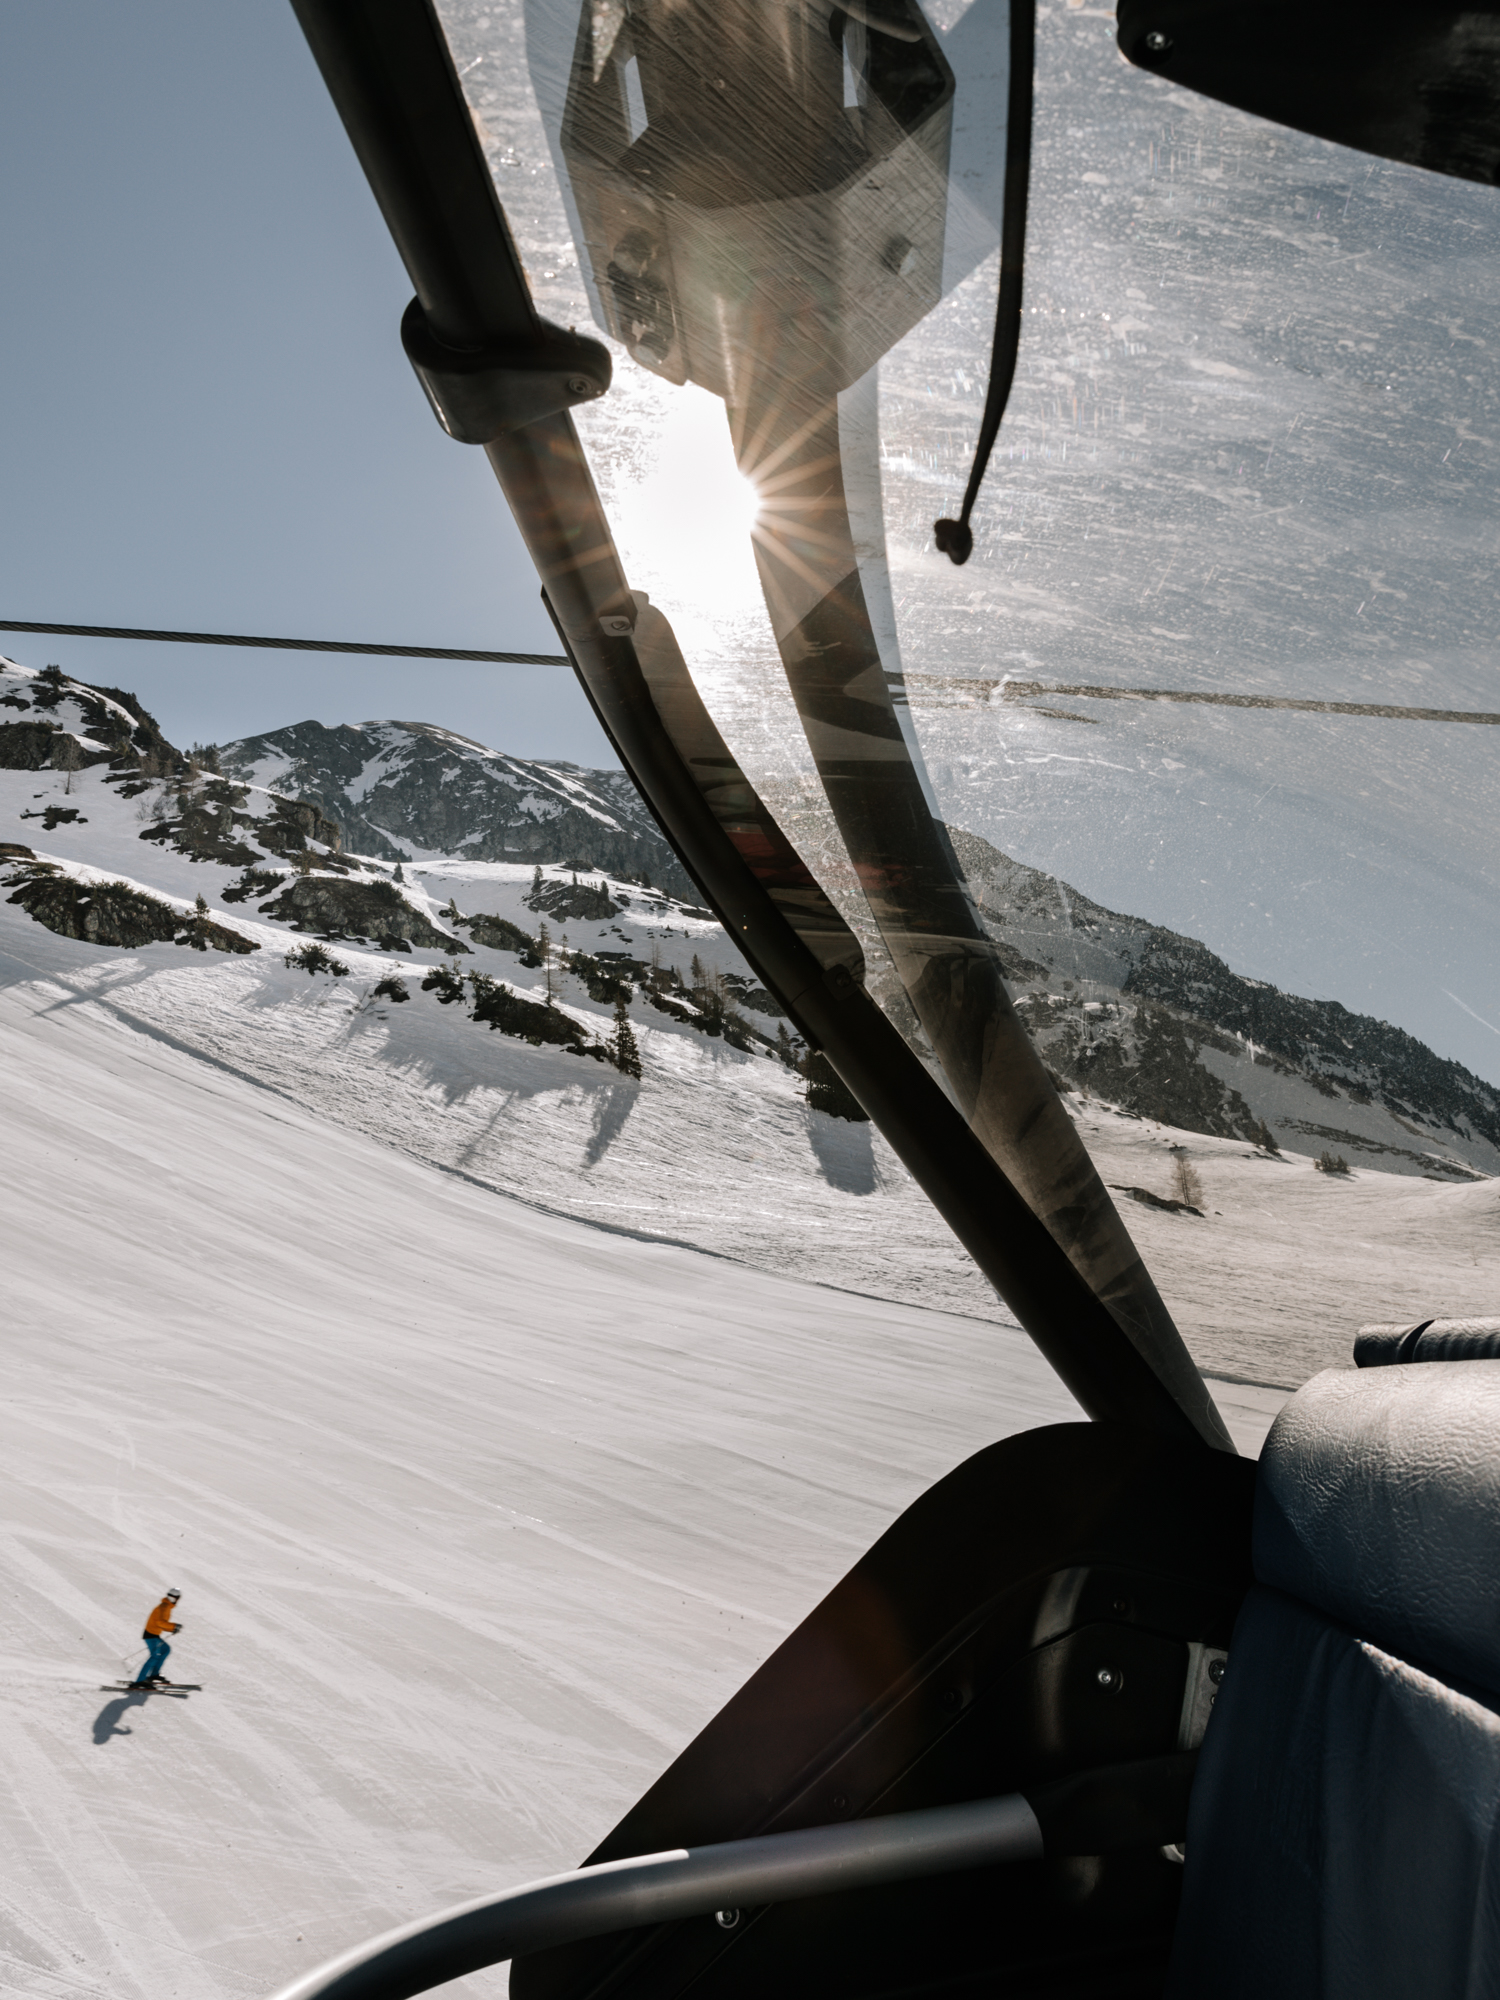 Fahrt mit dem Sessellift in Obertauern. Auf der Piste befindet sich ein Ski Alpin Fahrer.